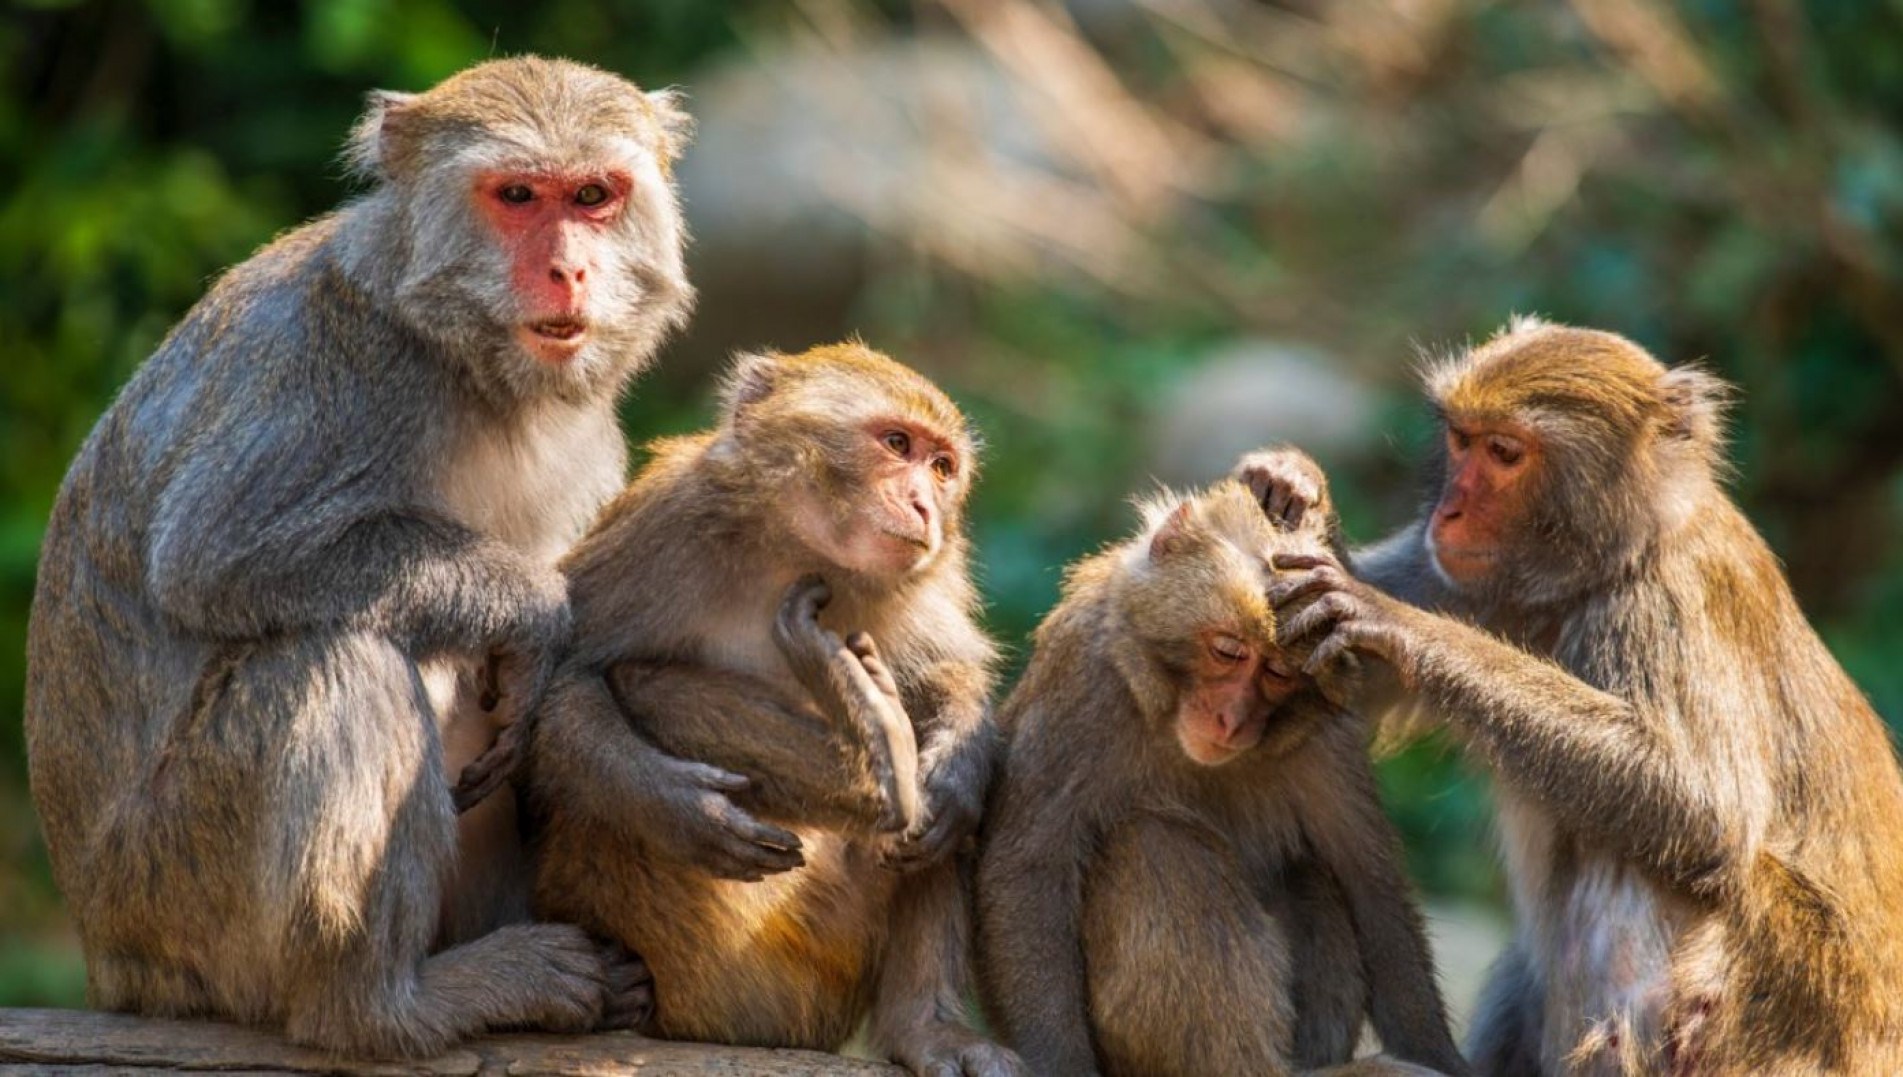  OMS: é improvável que surto de varíola dos macacos se transforme em pandemia